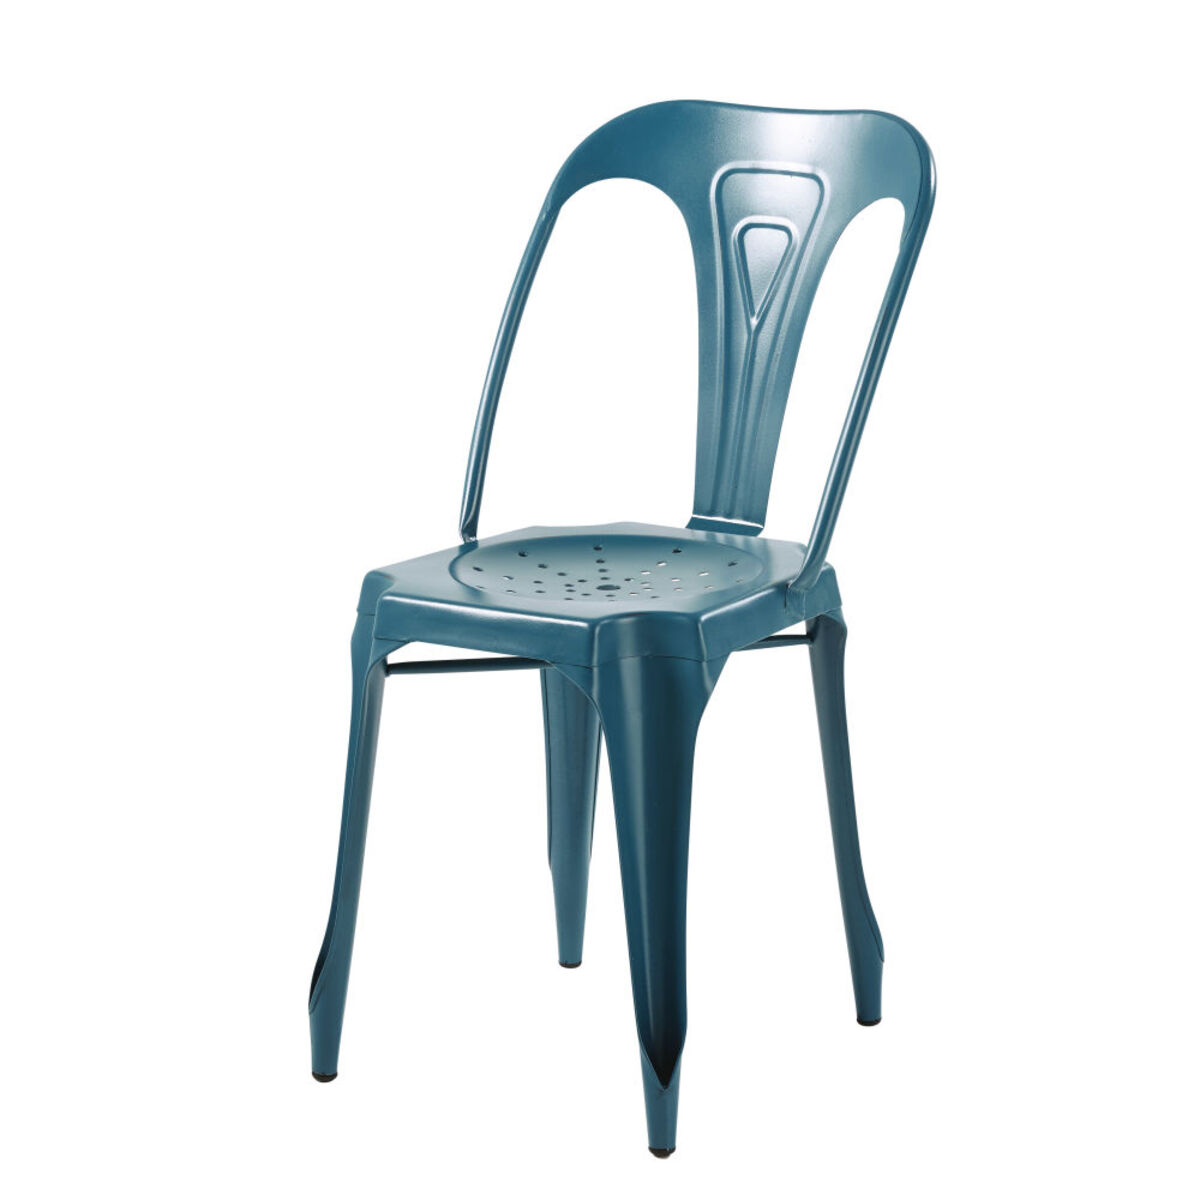 Chaise indus en métal bleu pétrole Multipl's